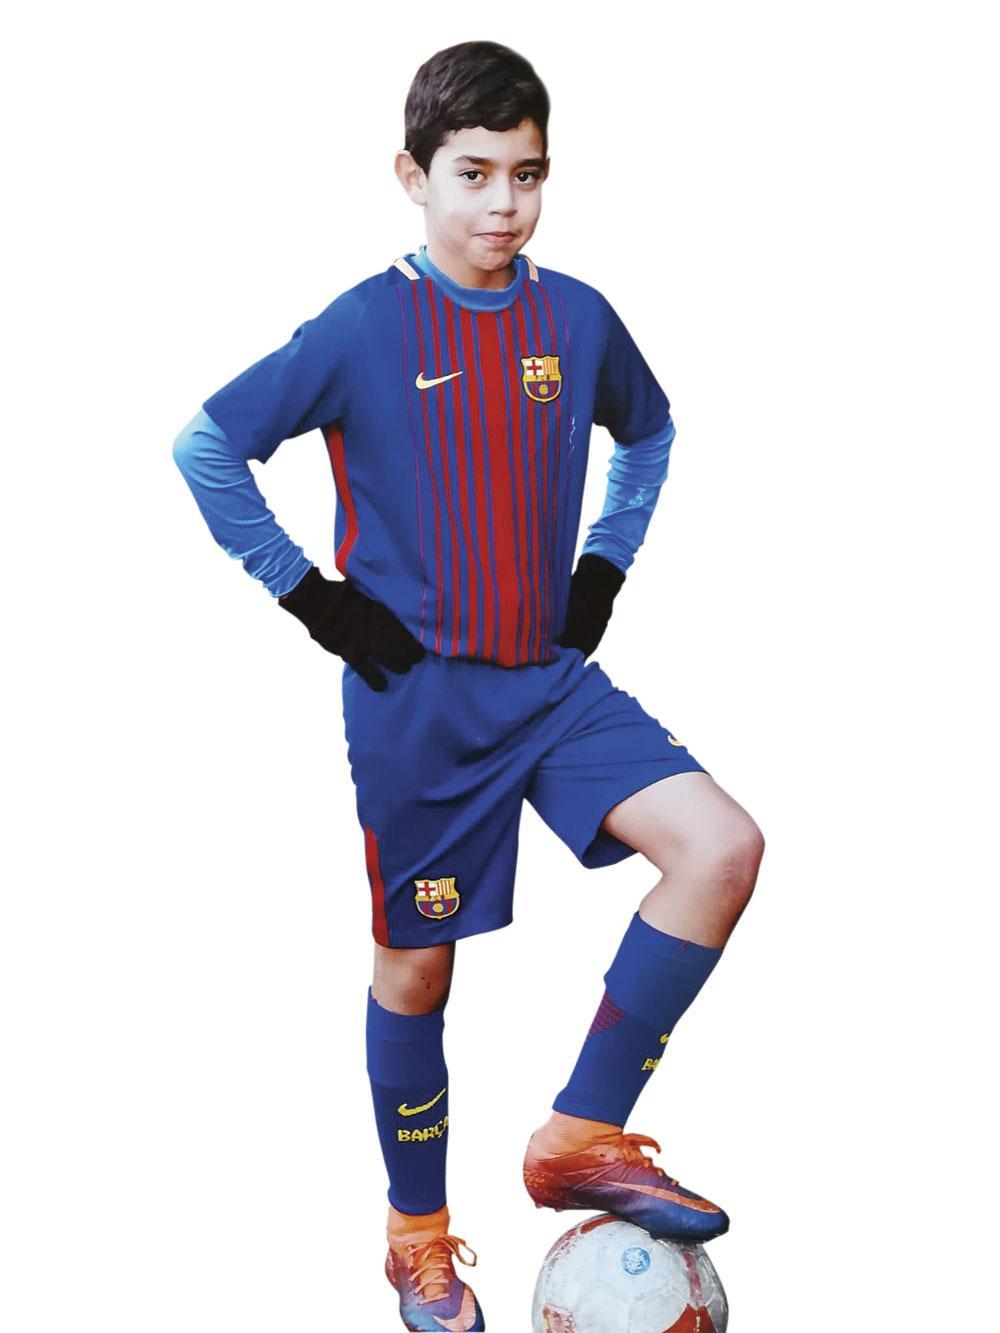 Lionel Messi achterna: Belg Adam Tounsi (12) opgenomen bij de jeugd van FC Barcelona